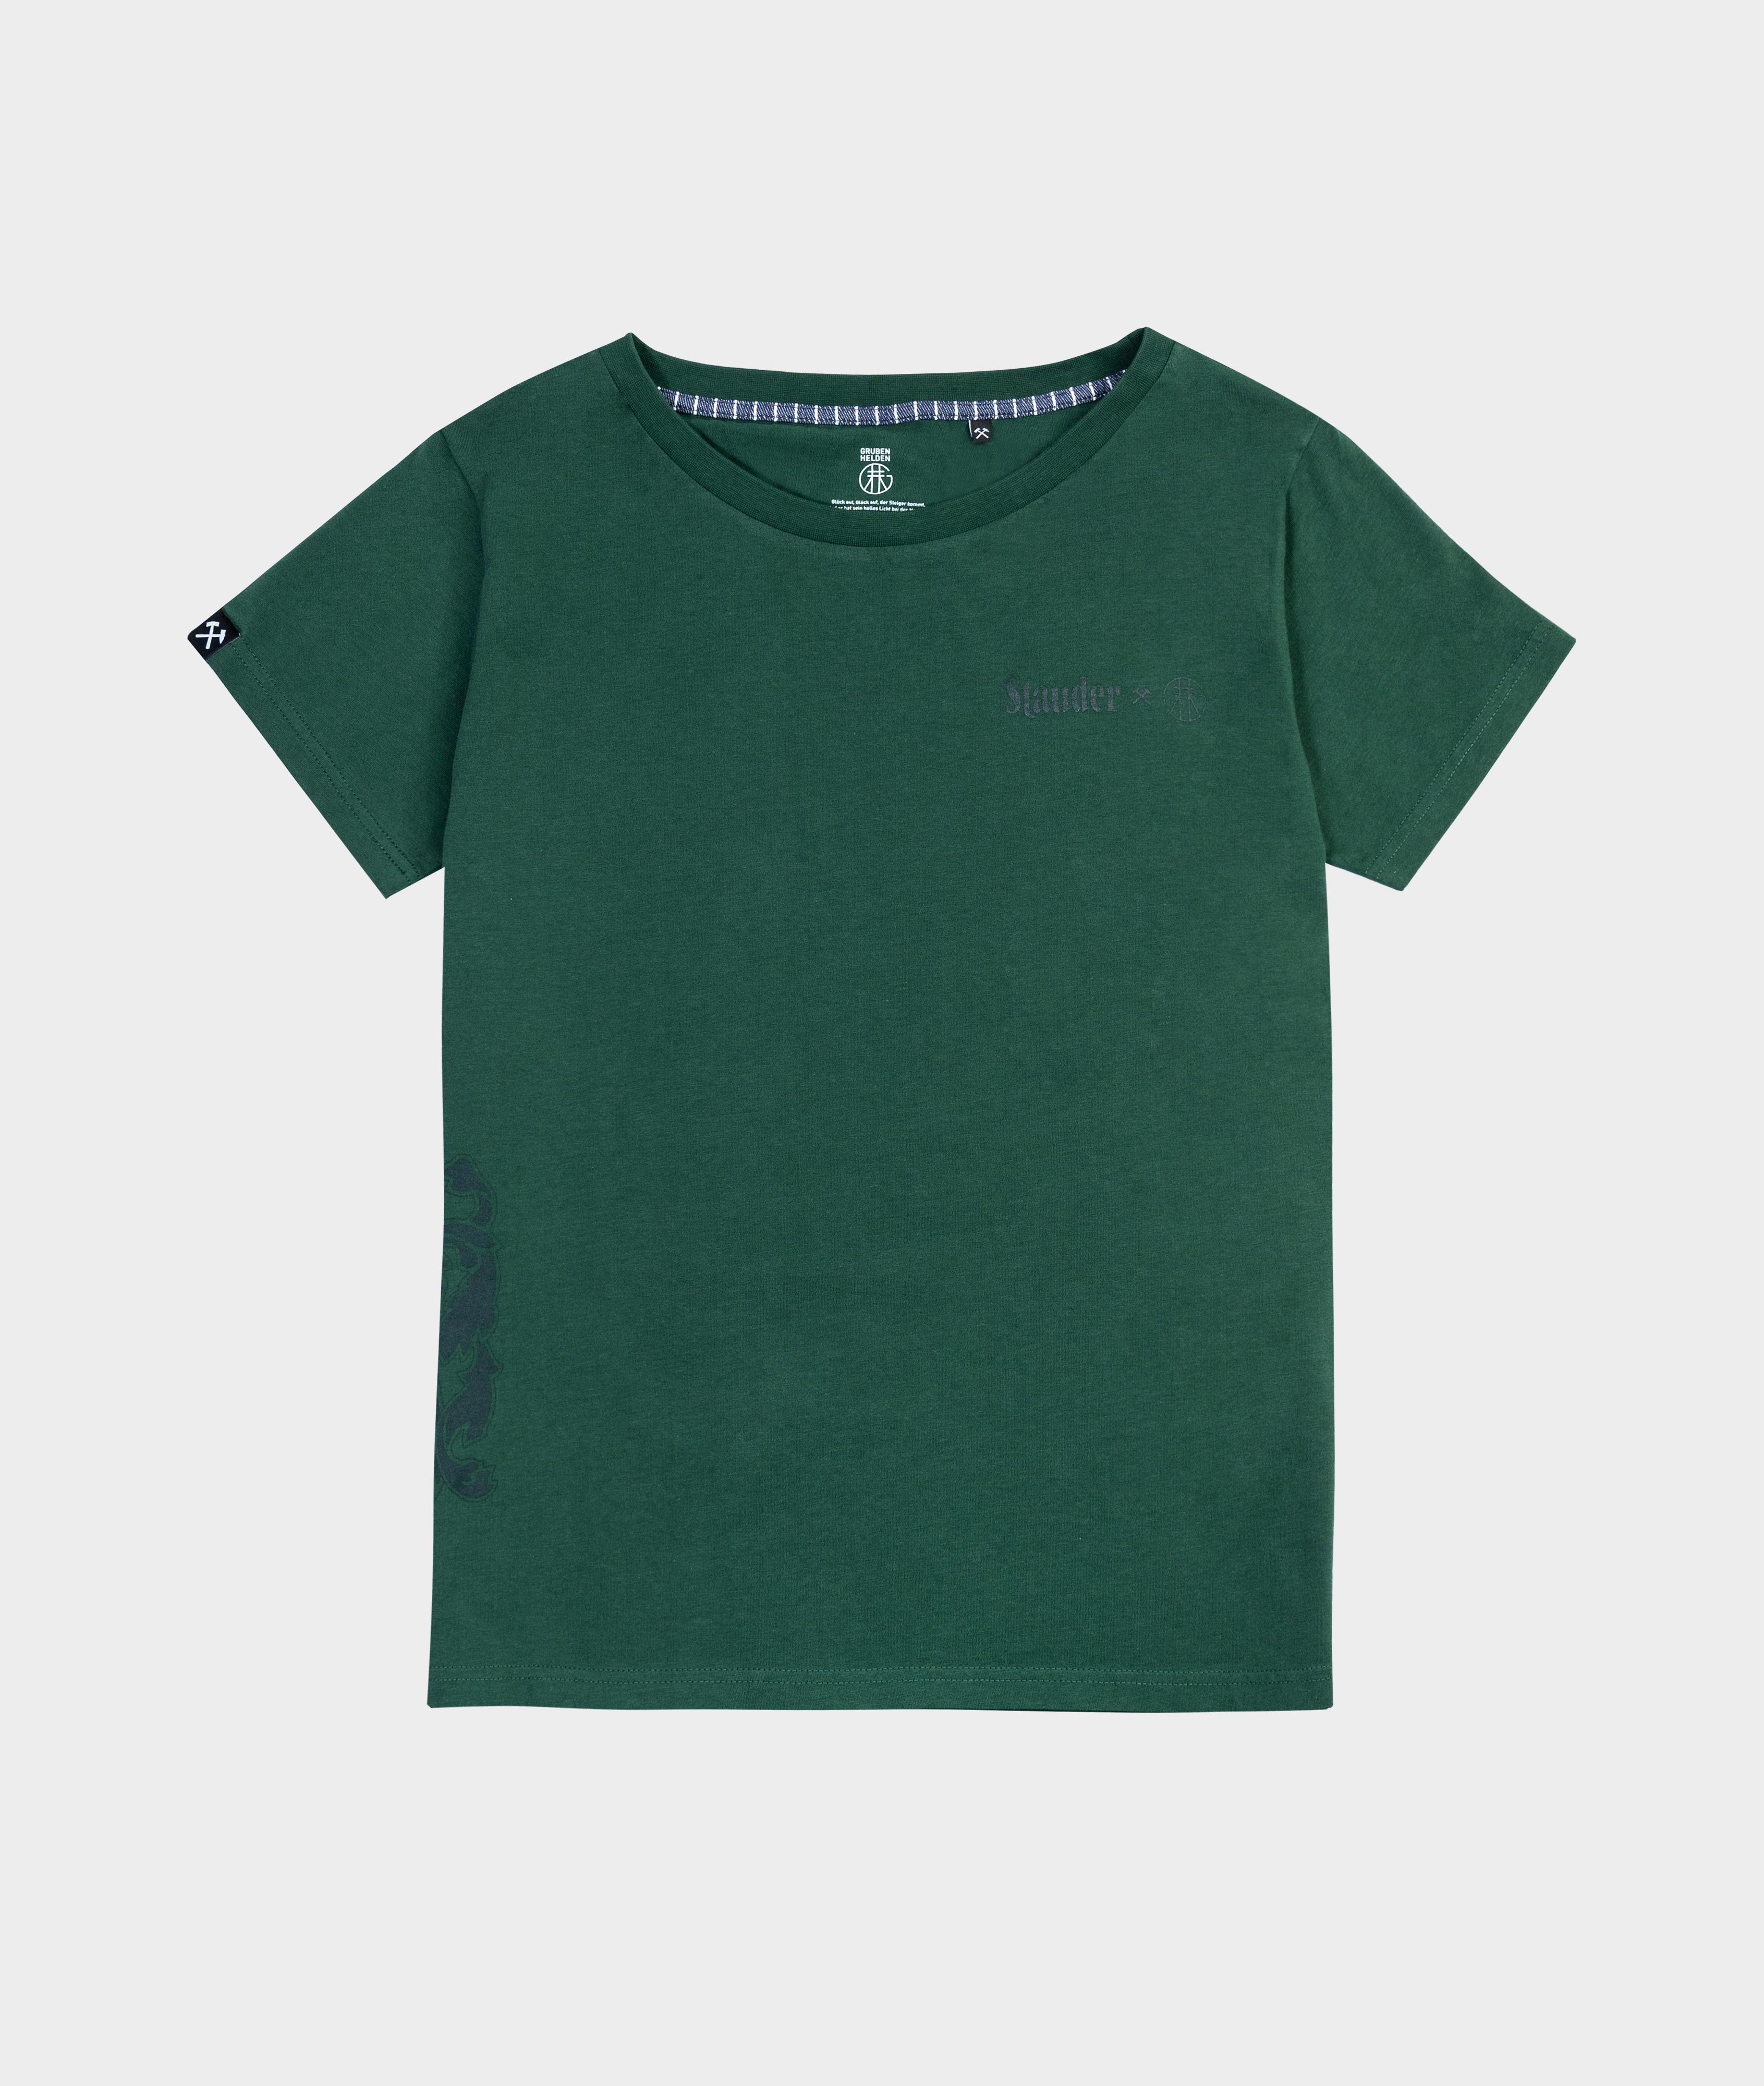    Stauder x Grubenhelden Herren T-Shirt grün